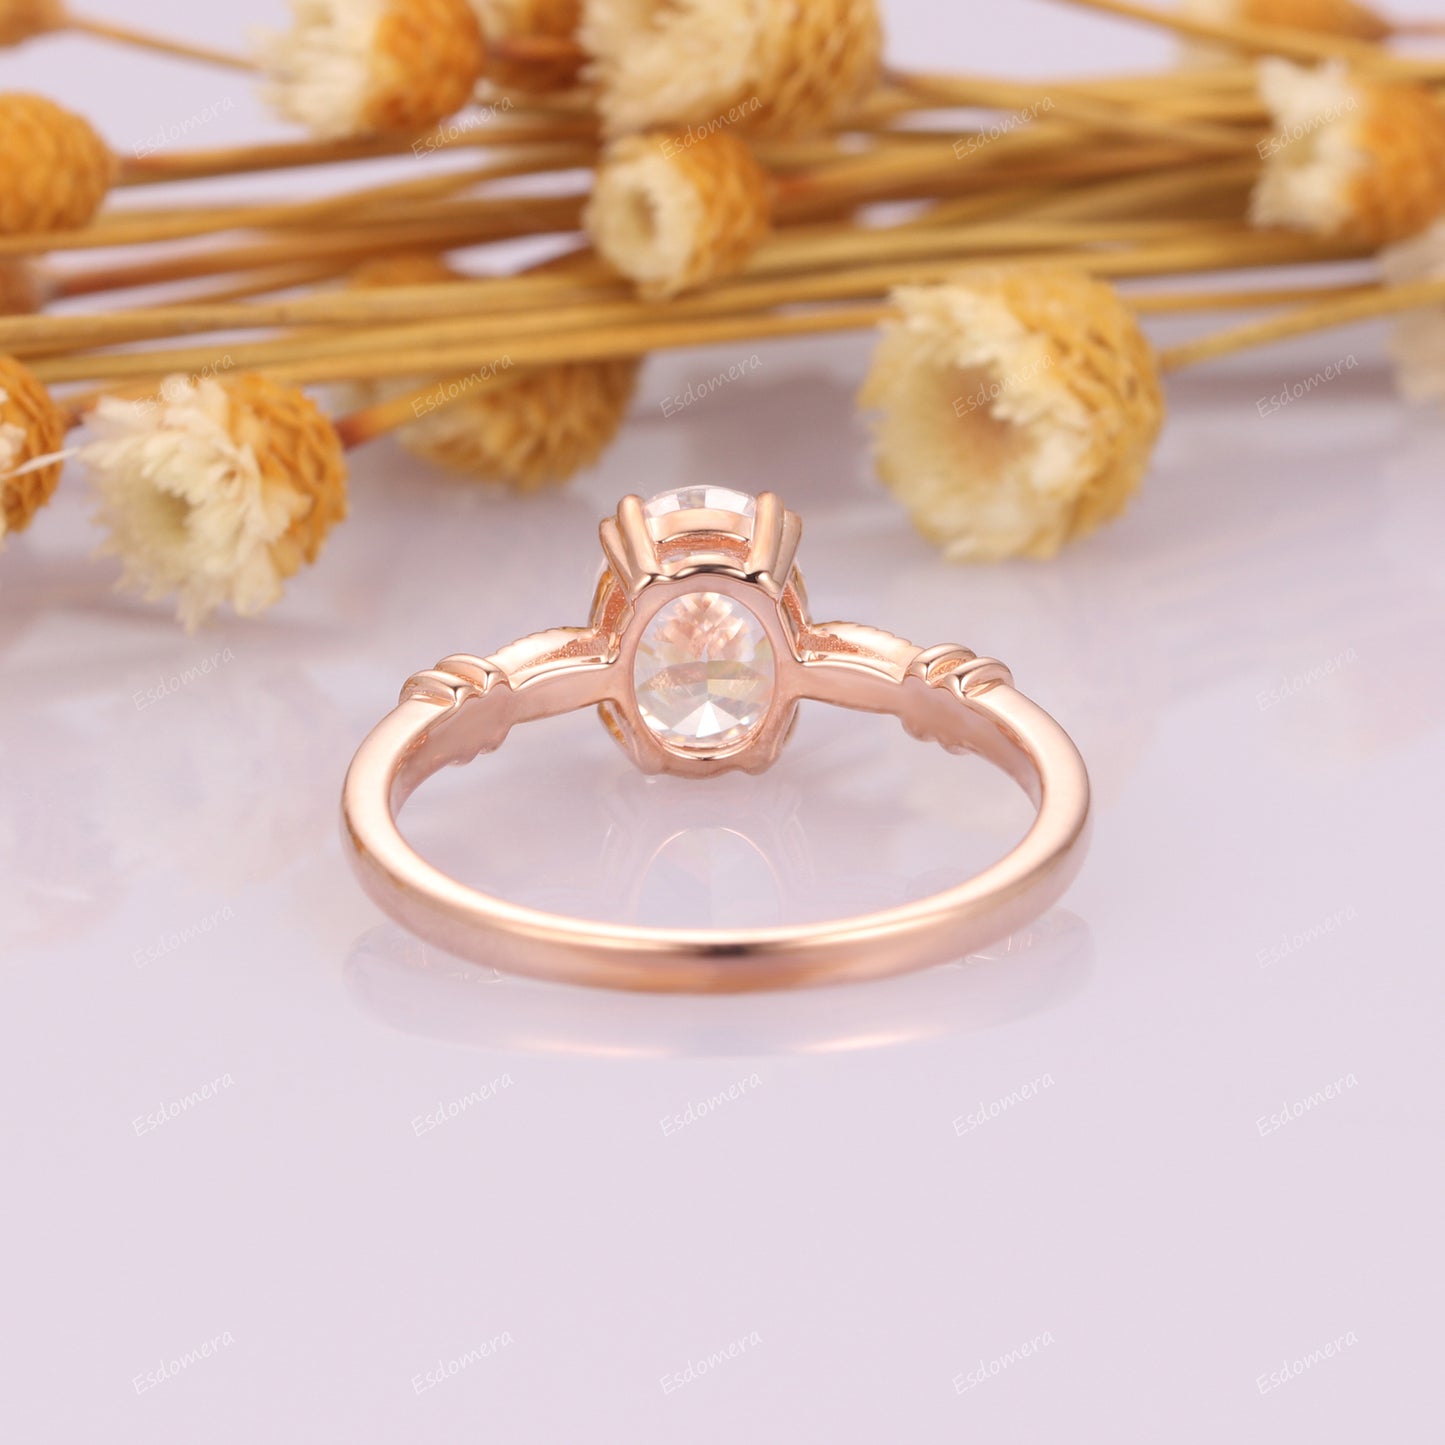 Double Prongs Oval Cut 1.5ct Moissanite Engagement Ring, Vintage 14k Rose Gold Milgrain Promise Ring, Moissanites Anniversary Ring